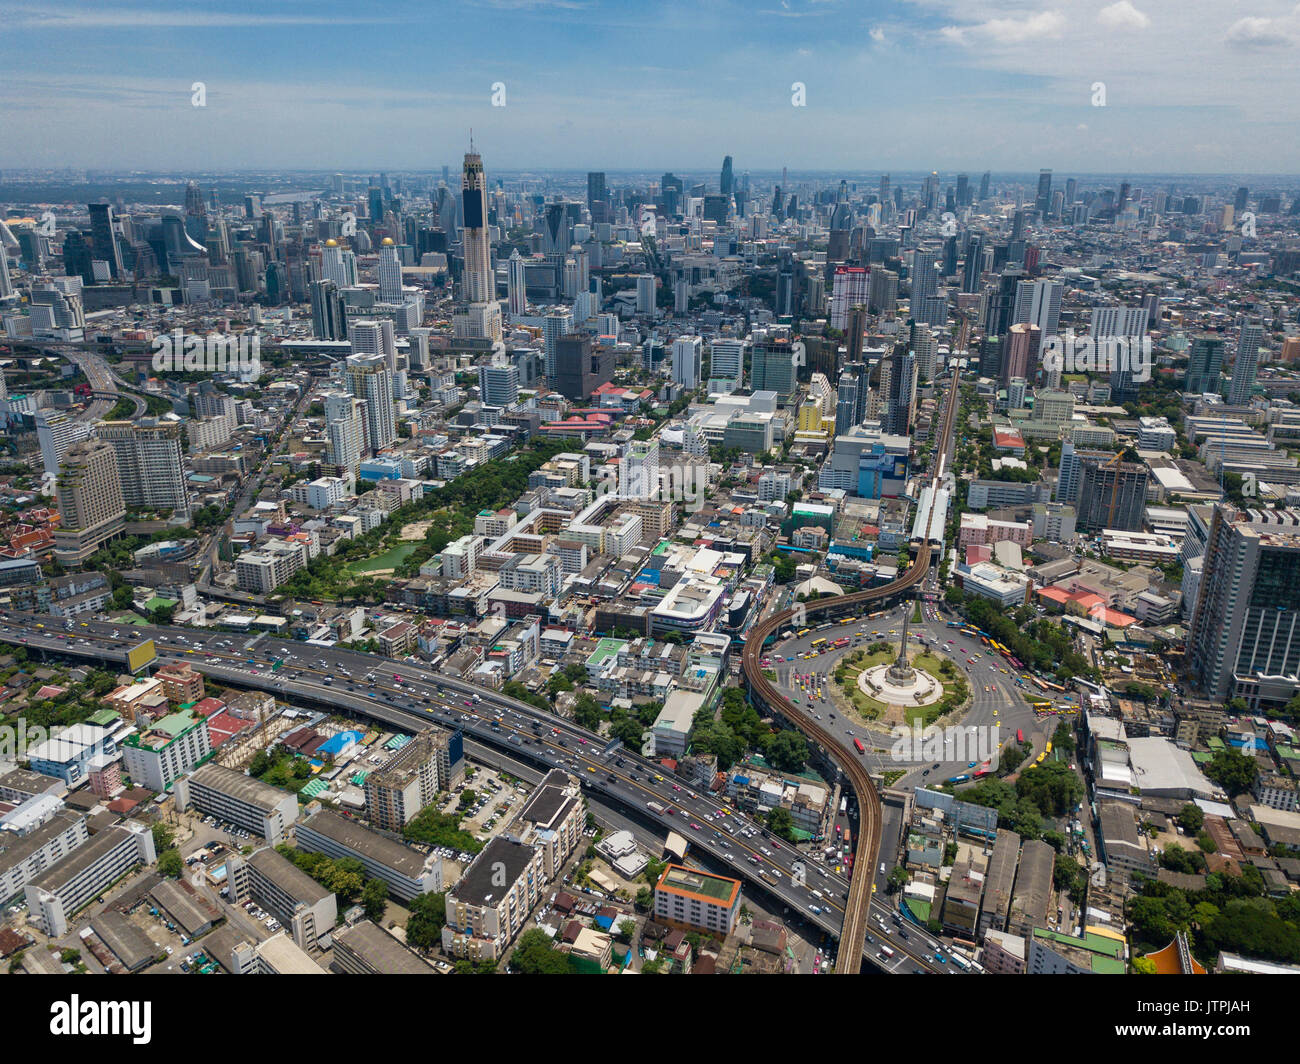 Aerial view of victory momument circus Bangkok Stock Photo